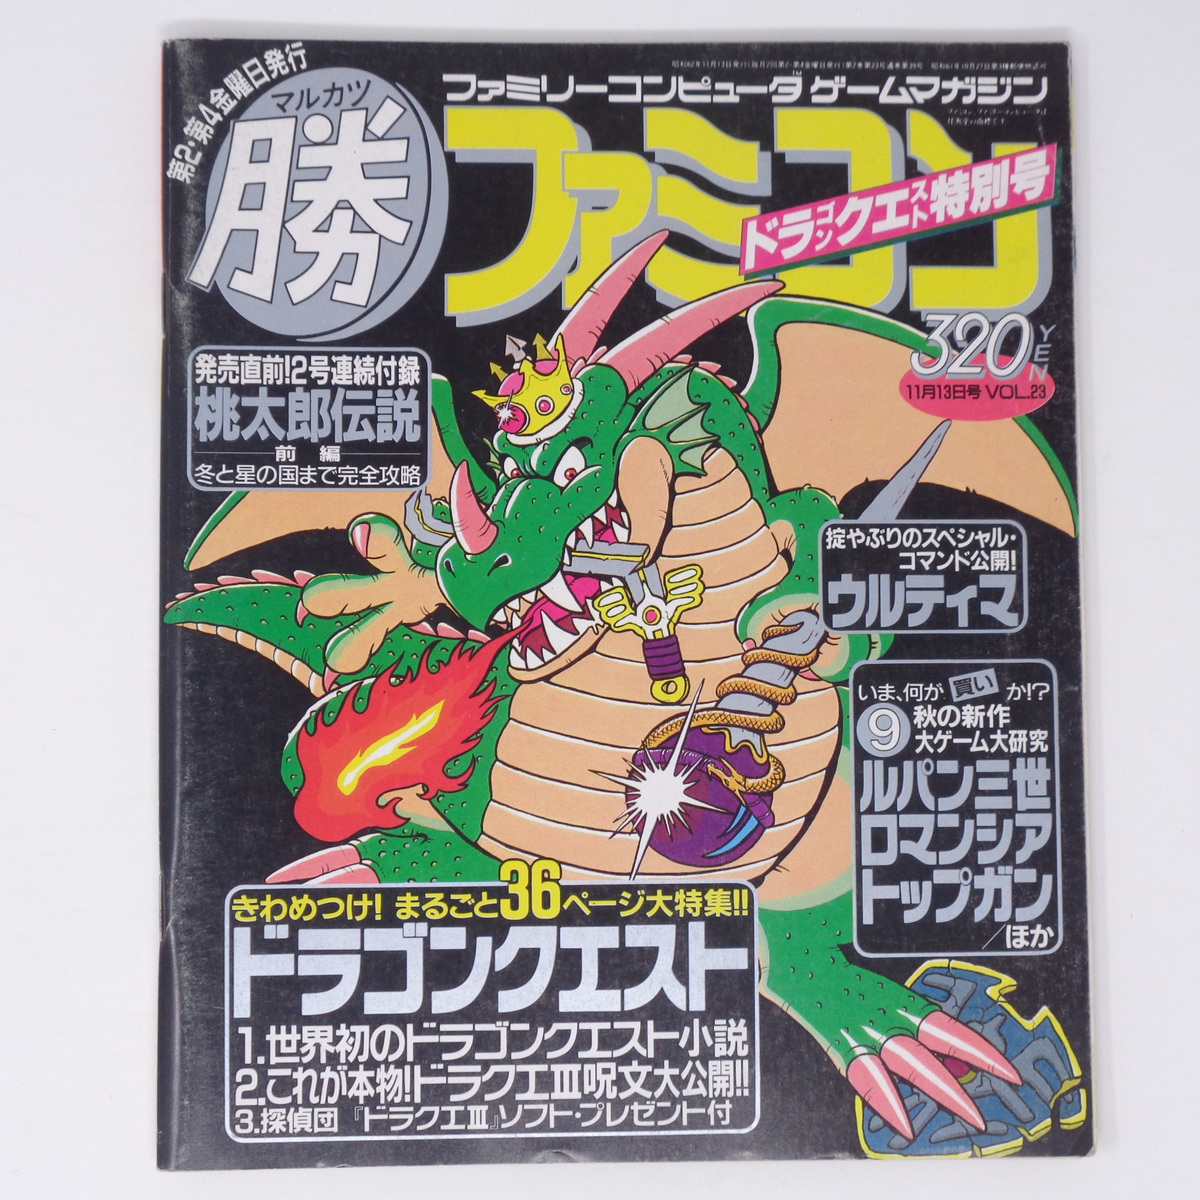 [Free Shipping]ma LUKA tsu maru . Famicom 1987 год 11 месяц 23 день номер Vol.23 дополнение нет,MAC карта нет / Dragon Quest специальный номер /DQ3 игра журнал 